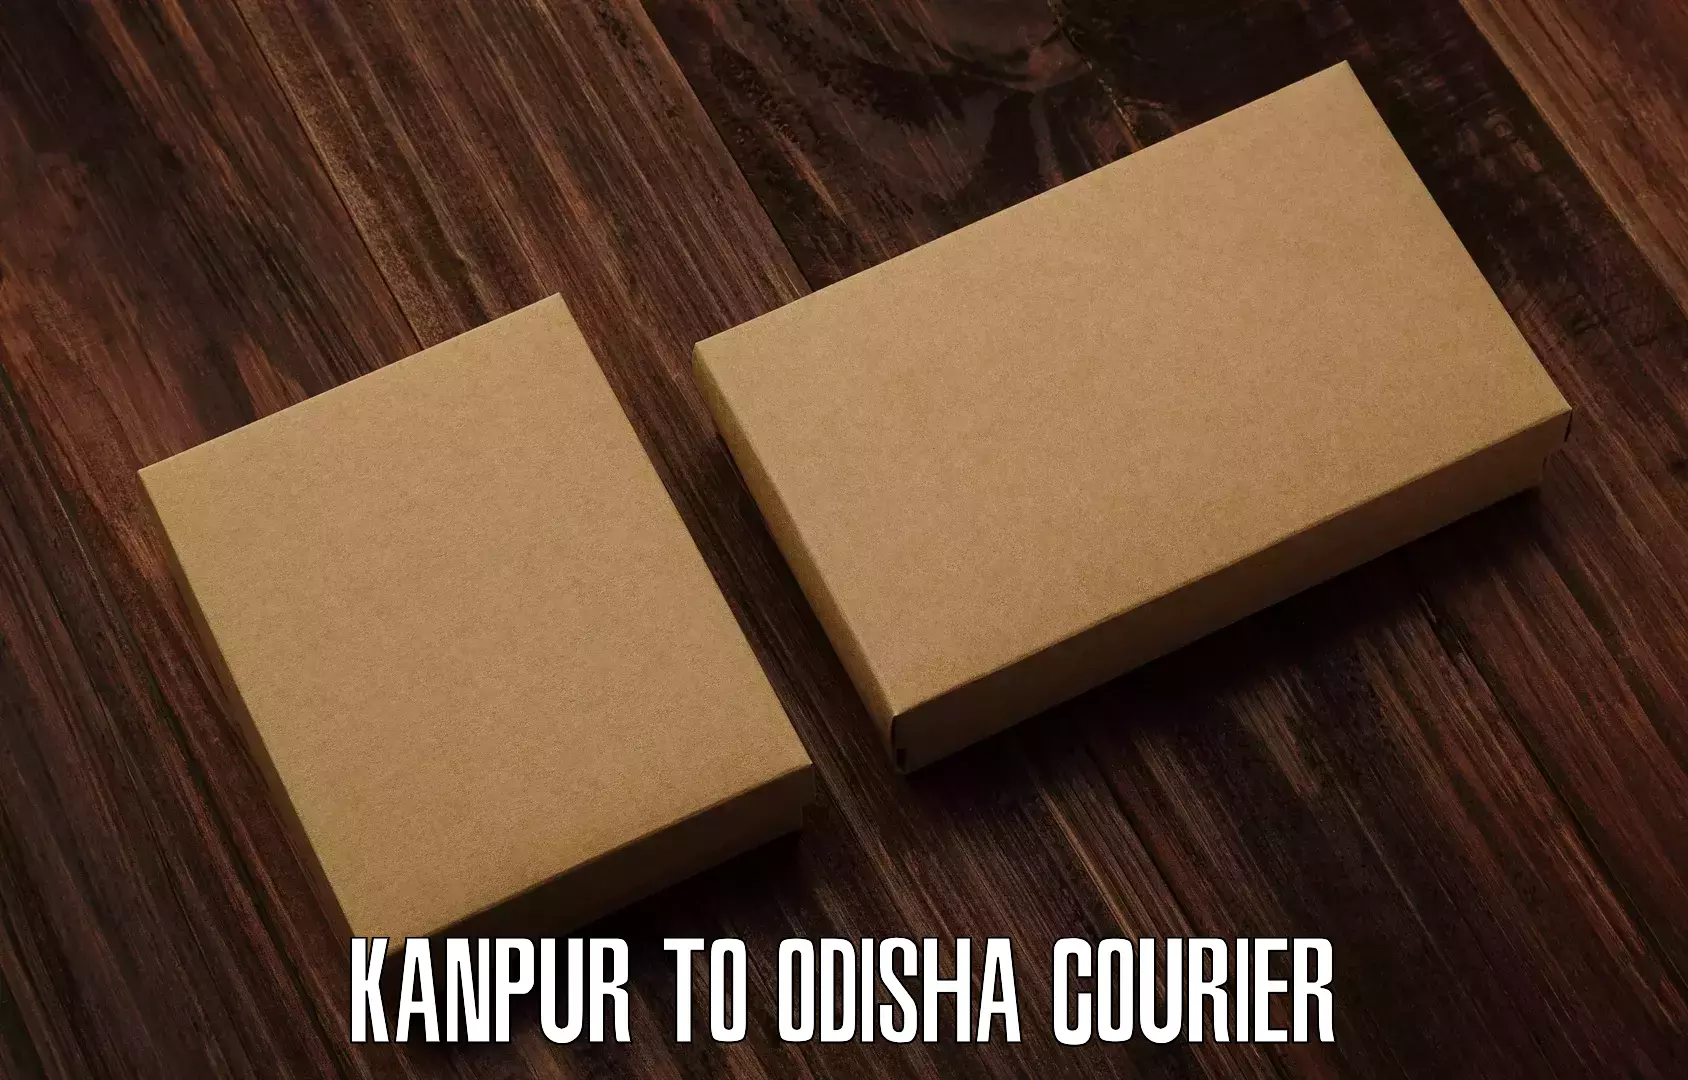 Same day shipping in Kanpur to Bhubaneswar